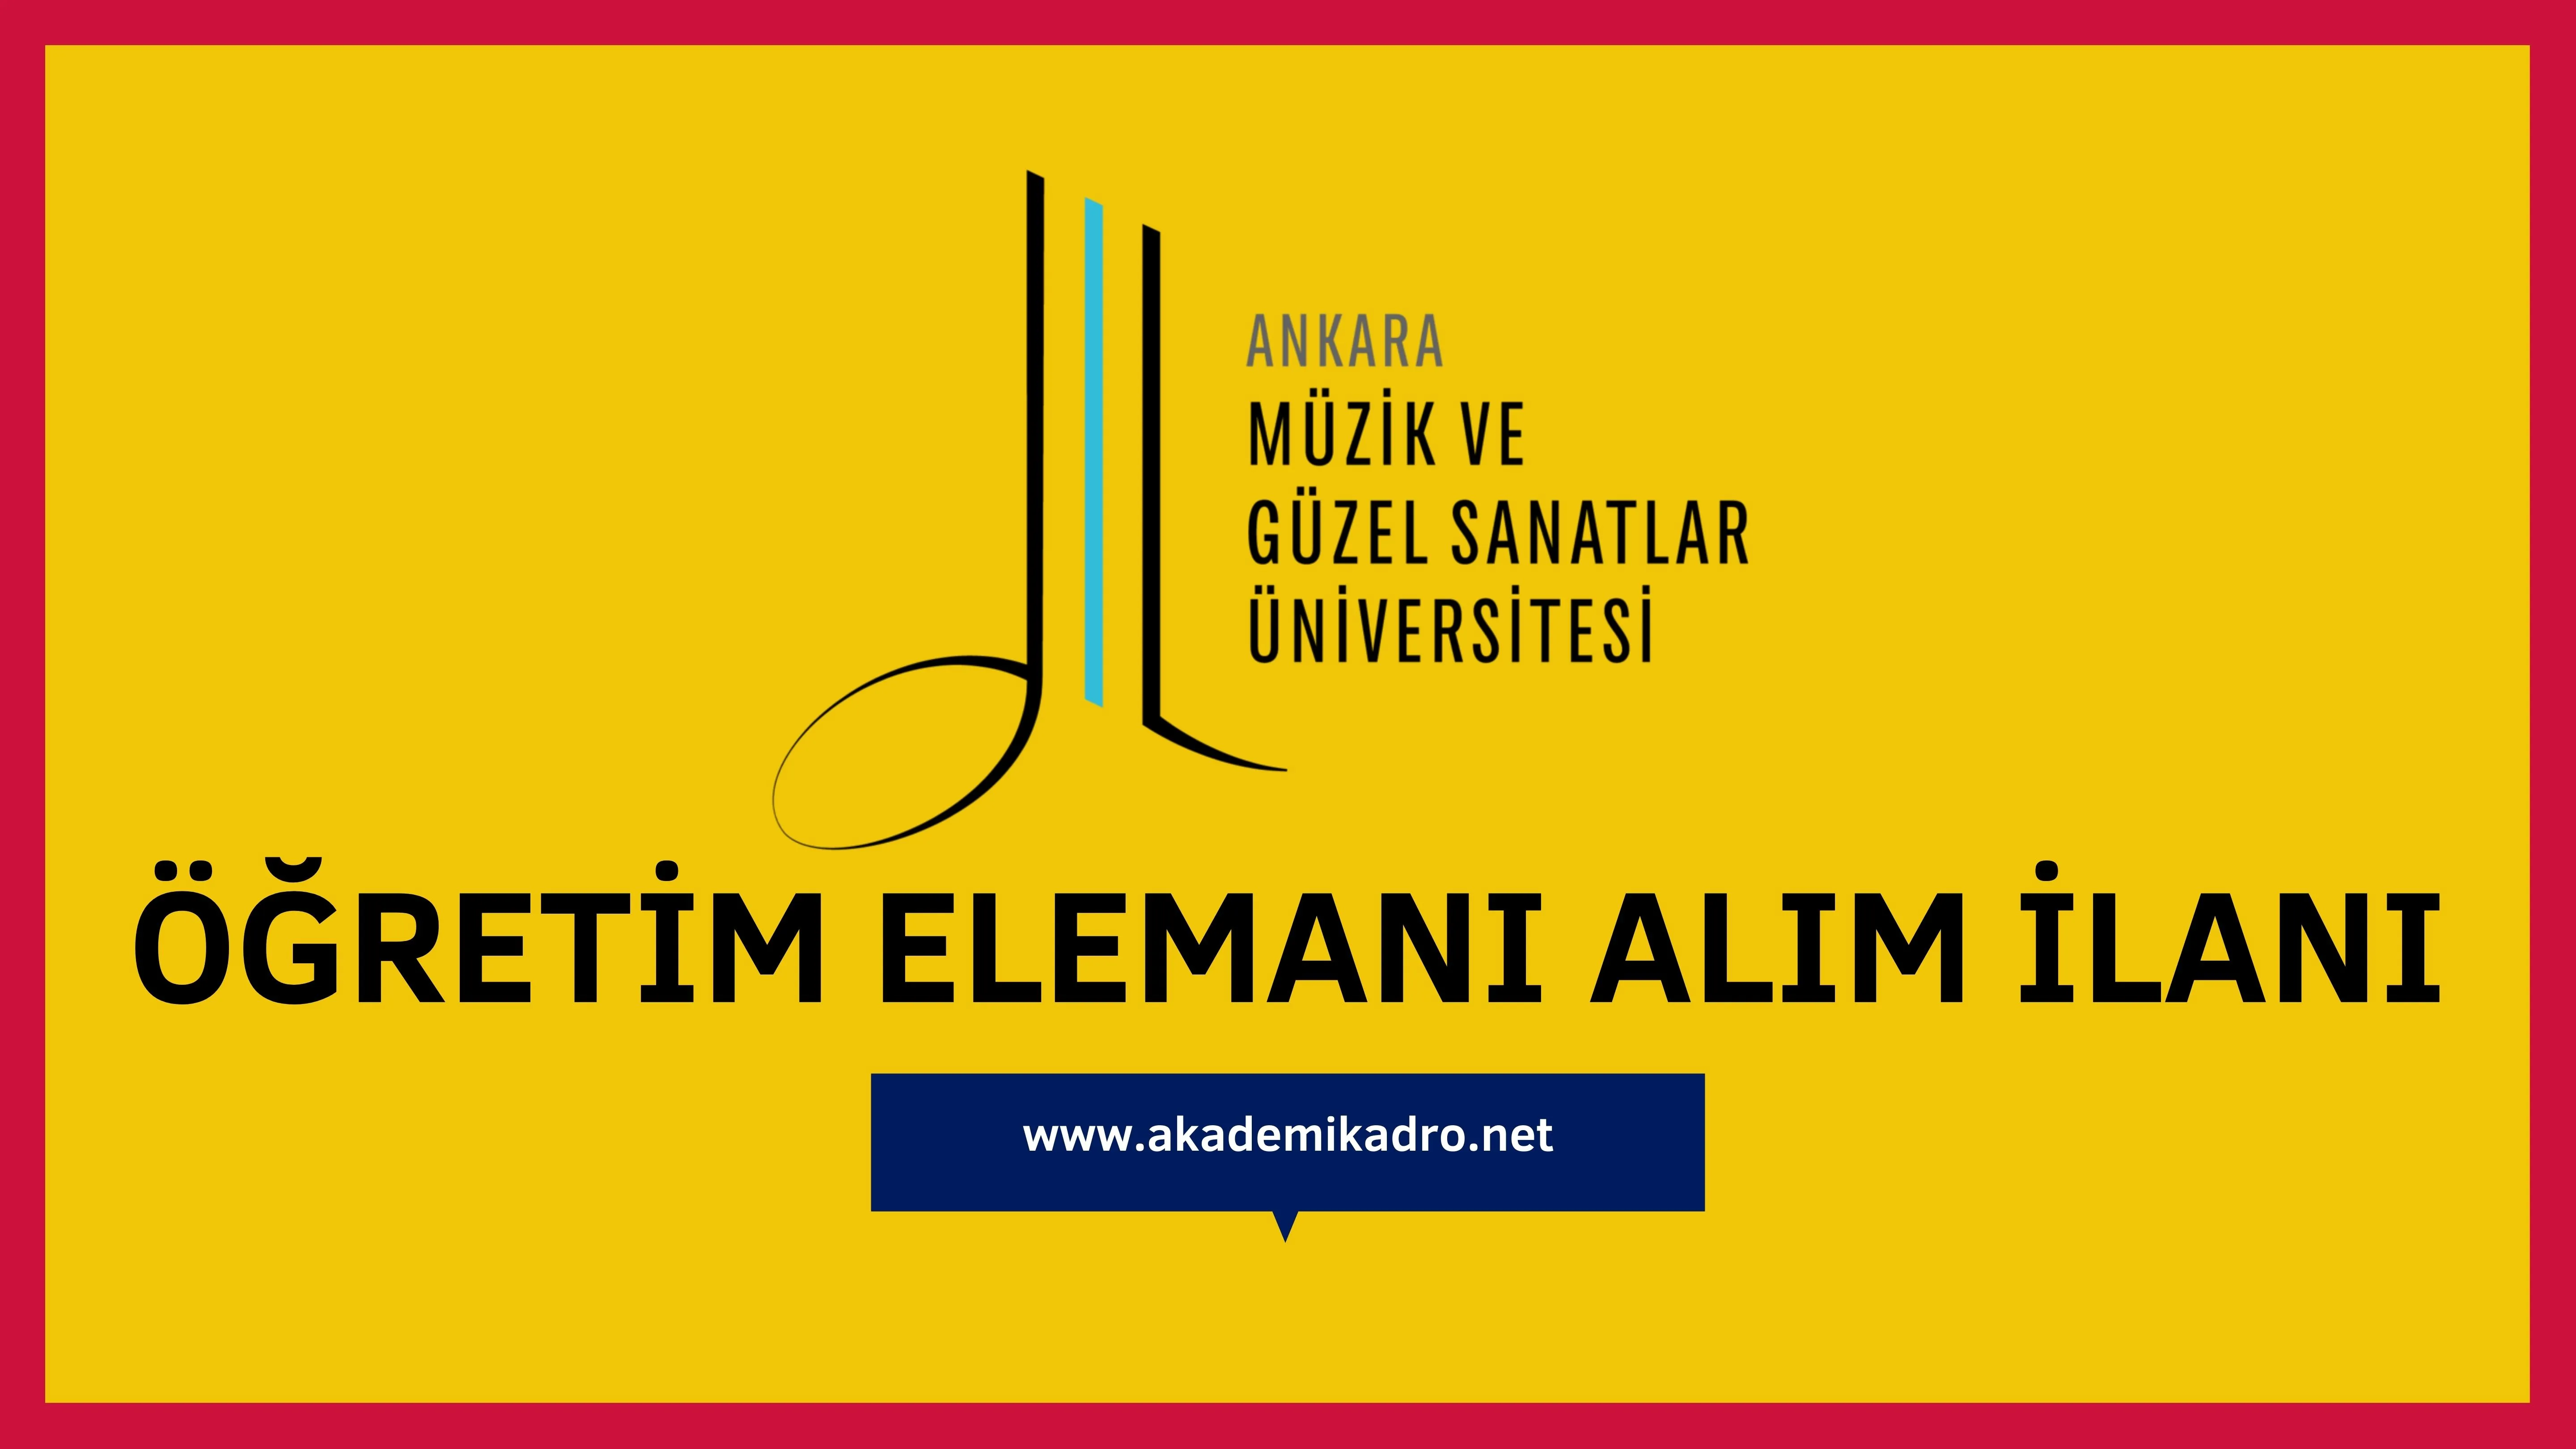 Ankara Müzik ve Güzel Sanatlar Üniversitesi 19 öğretim üyesi, 2 Öğretim görevlisi alacaktır.